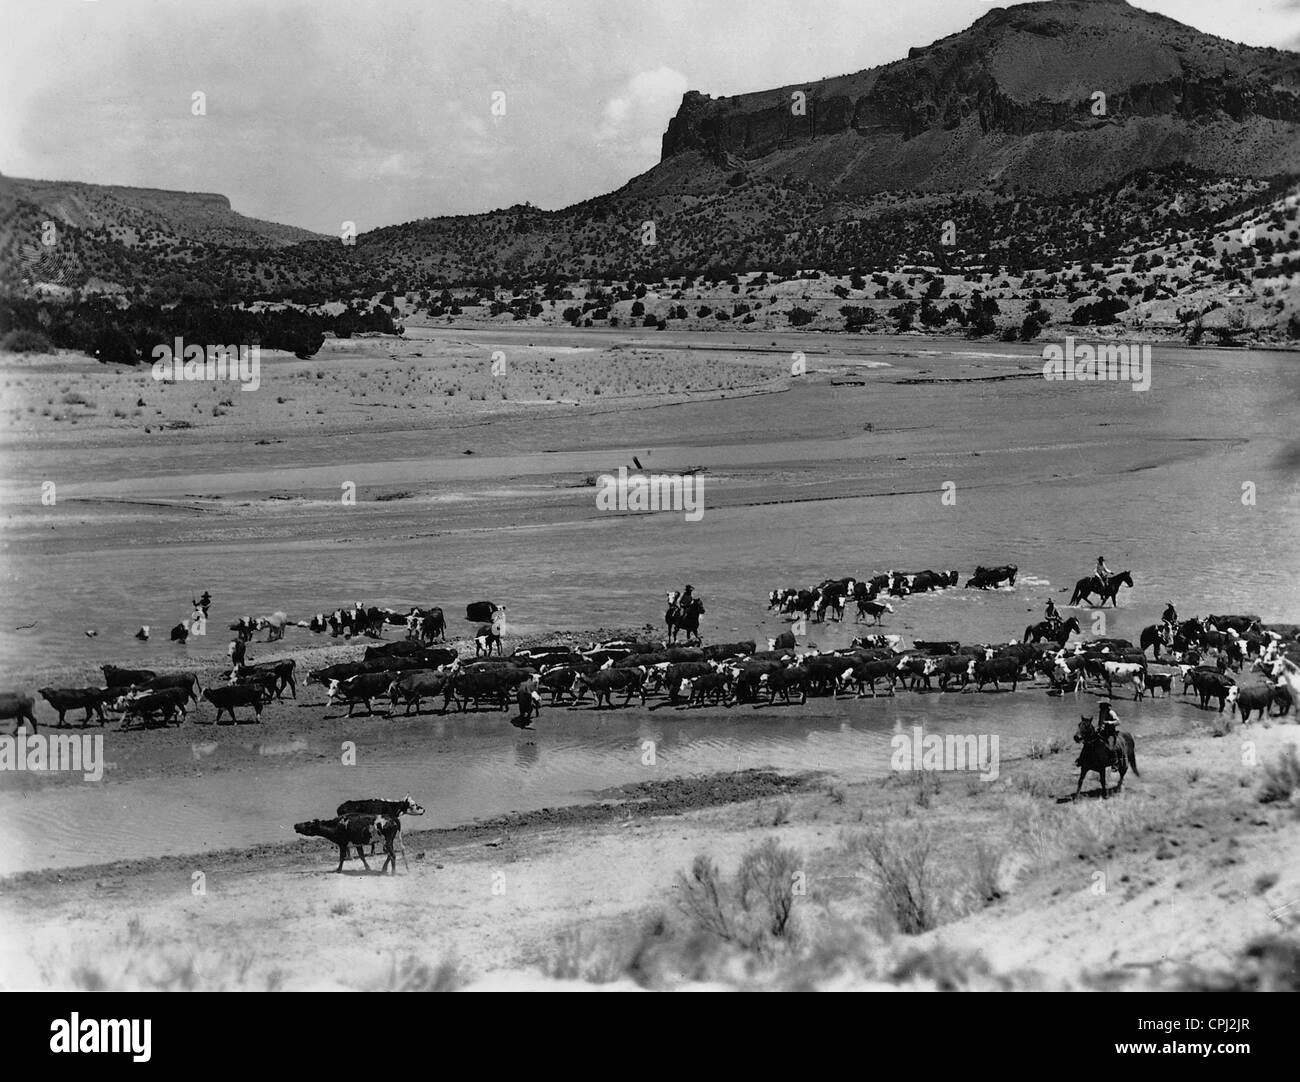 Cattle herd in Texas, 1936 Stock Photo